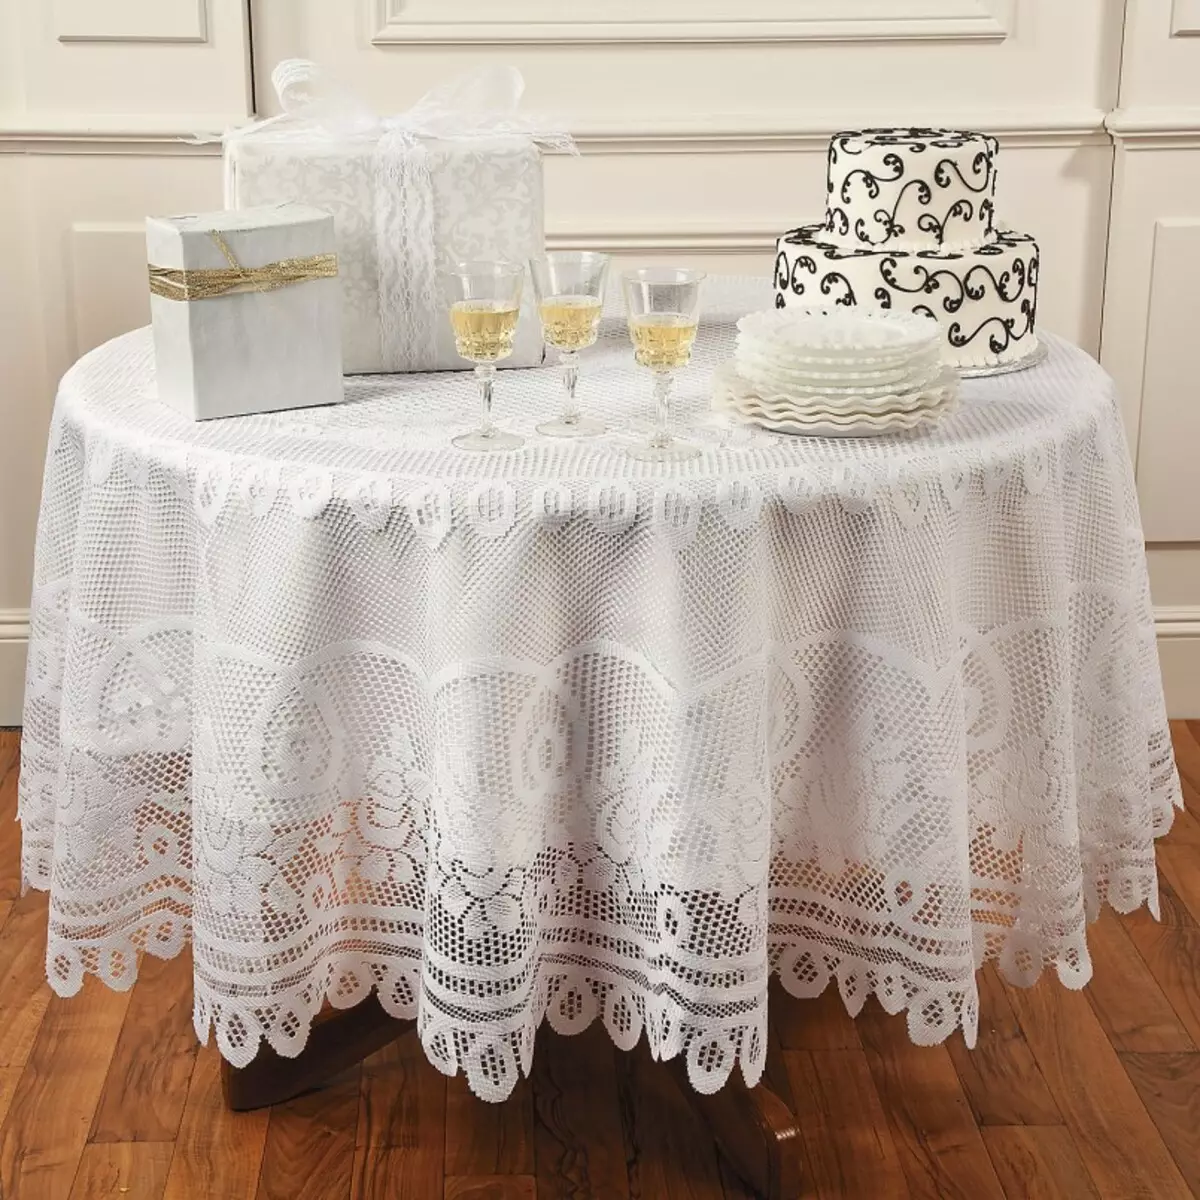 ผ้าปูโต๊ะสีขาว (35 รูป): ผ้าปูโต๊ะสีขาวหิมะบนโต๊ะฝ้ายและอื่น ๆ สีดำและสีขาวและผ้าปูโต๊ะที่สวยงามอื่น ๆ 21608_4